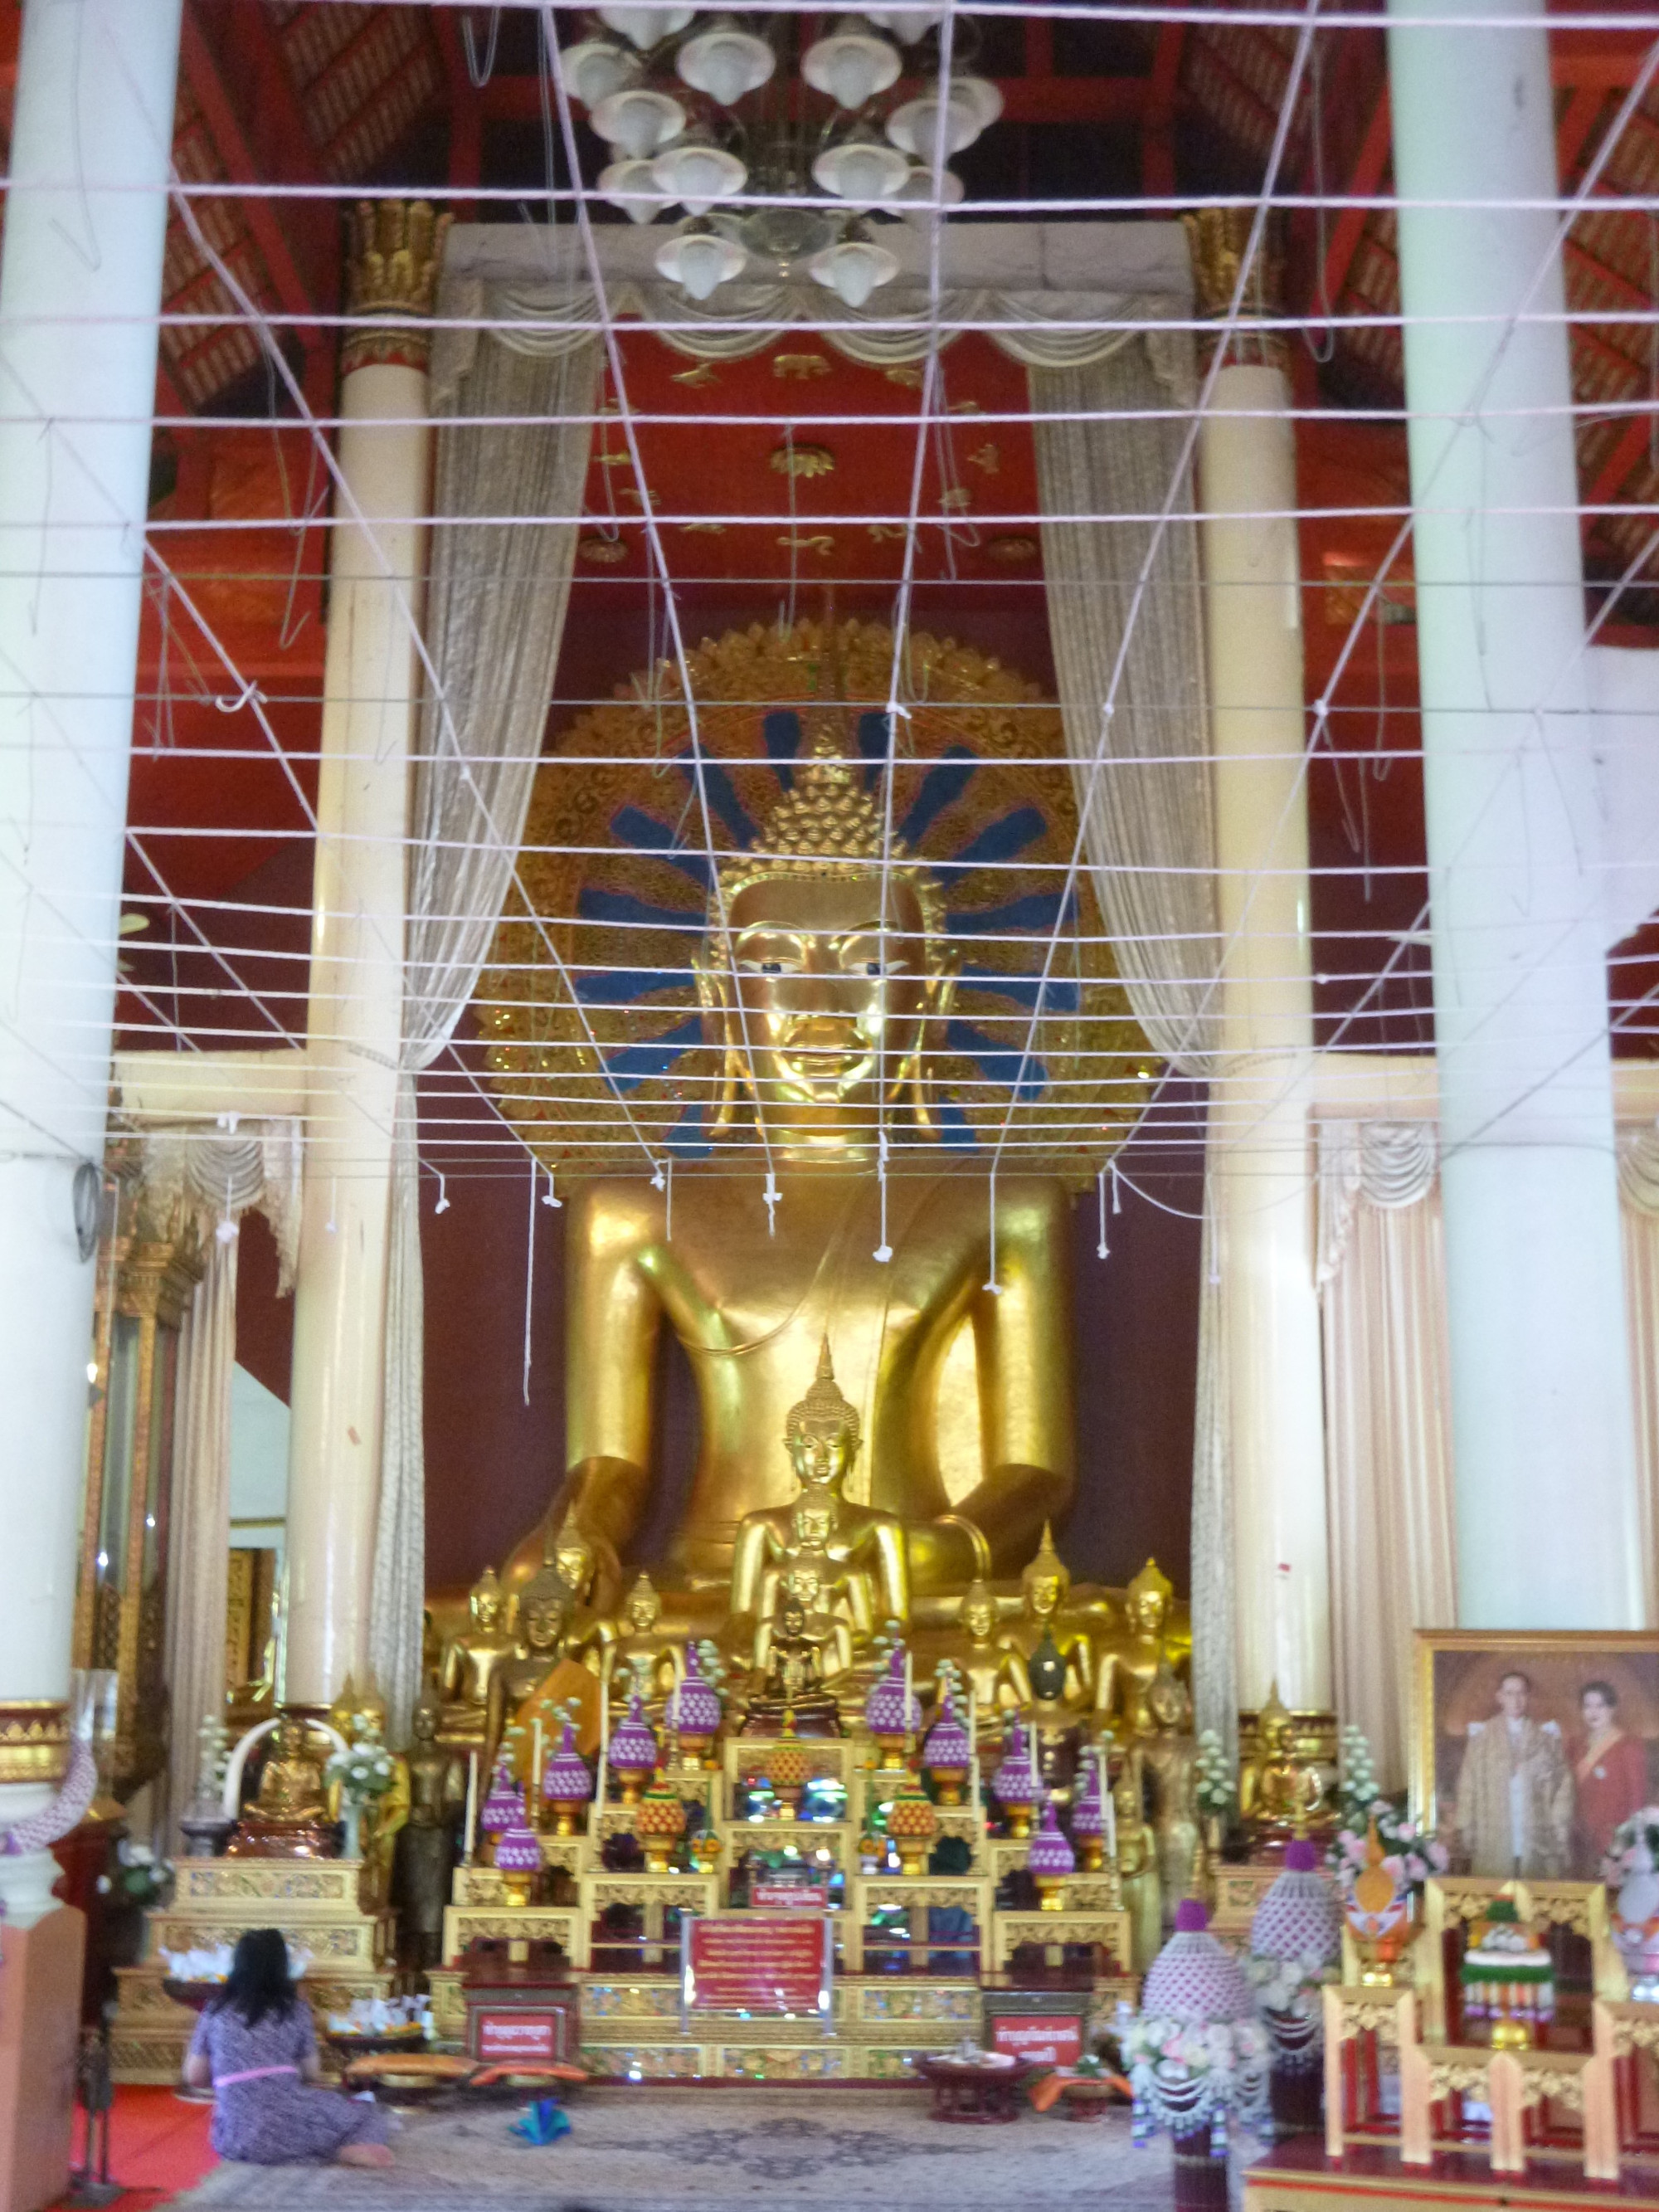 Large Golden Seated Buddha